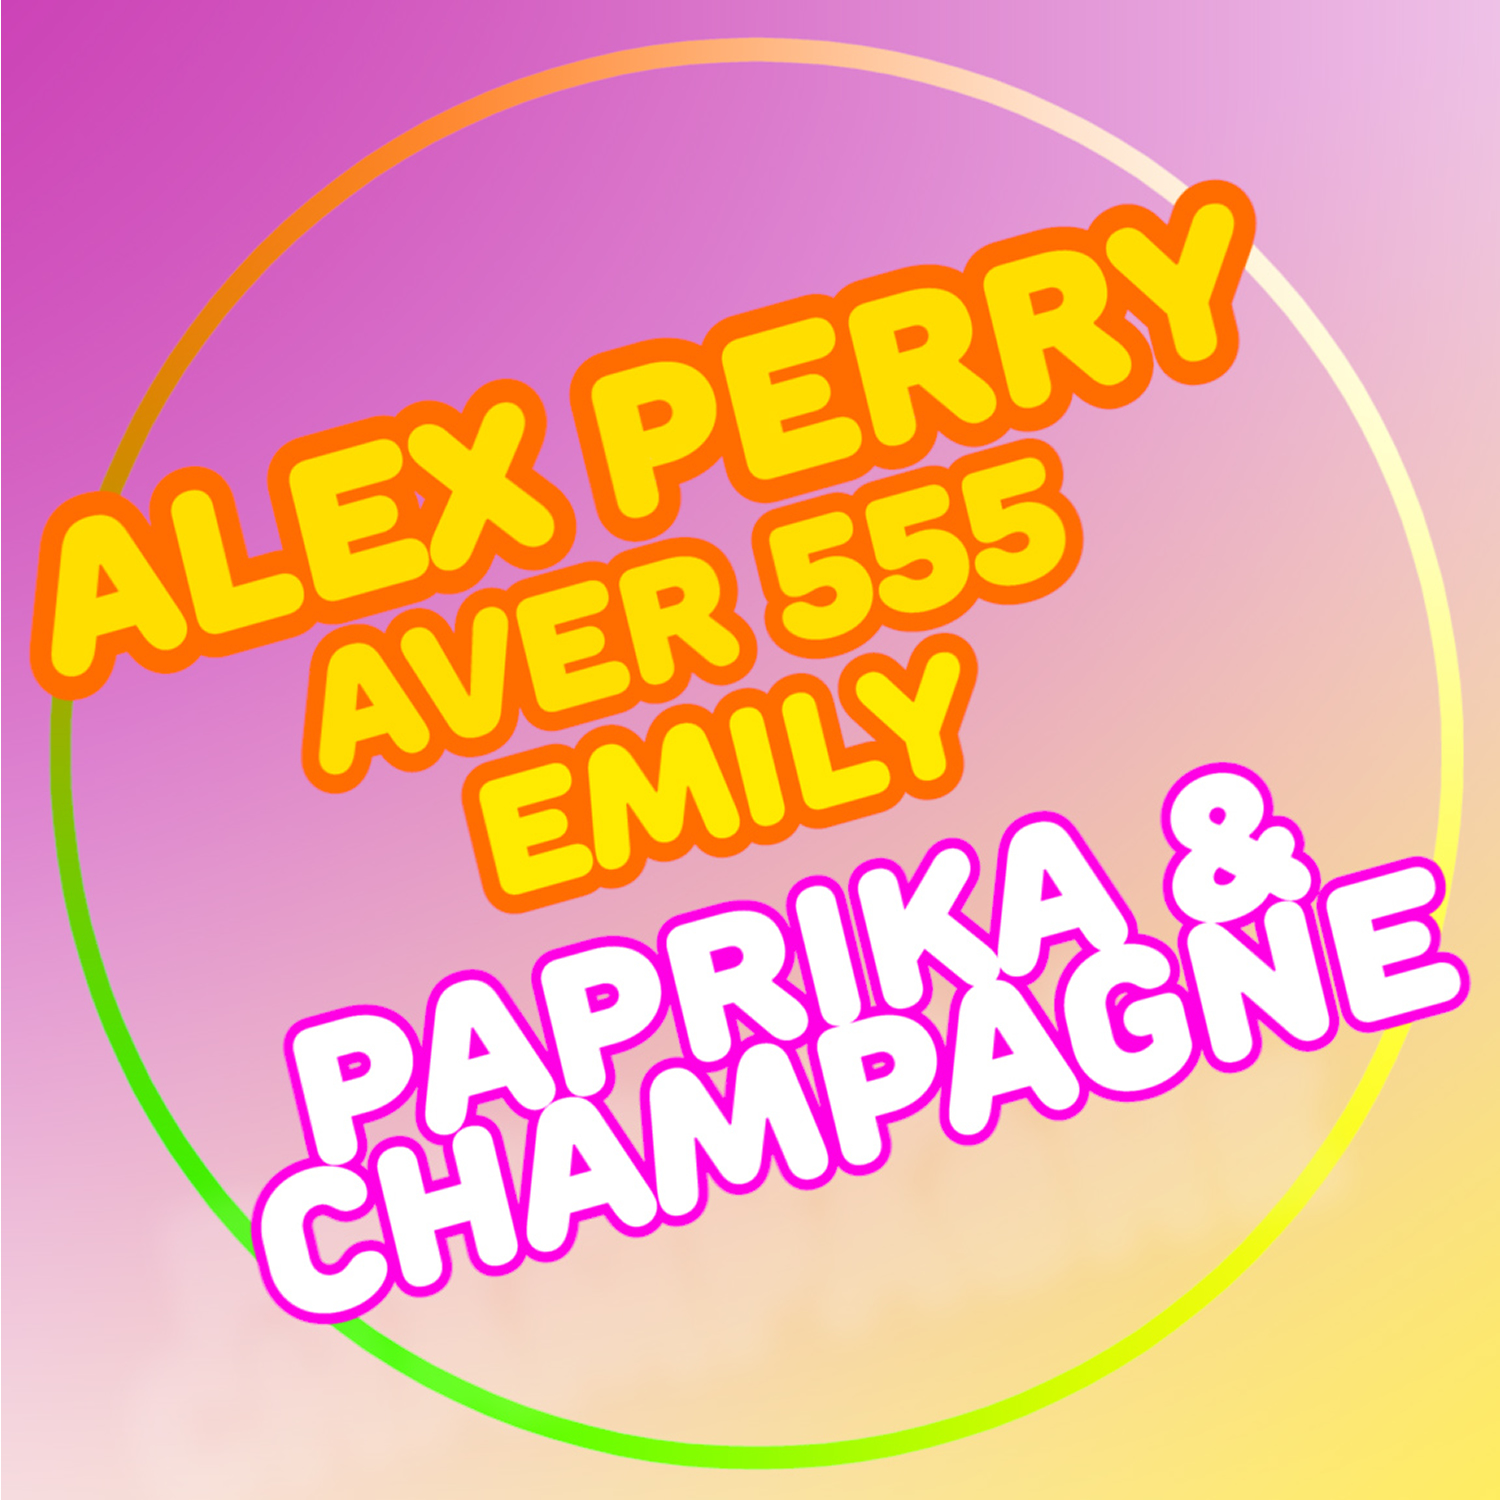 In radio e negli store “Paprika & Champagne feat. Aver 555 e Emily” il singolo dell’estate 2021 di Alex Perry